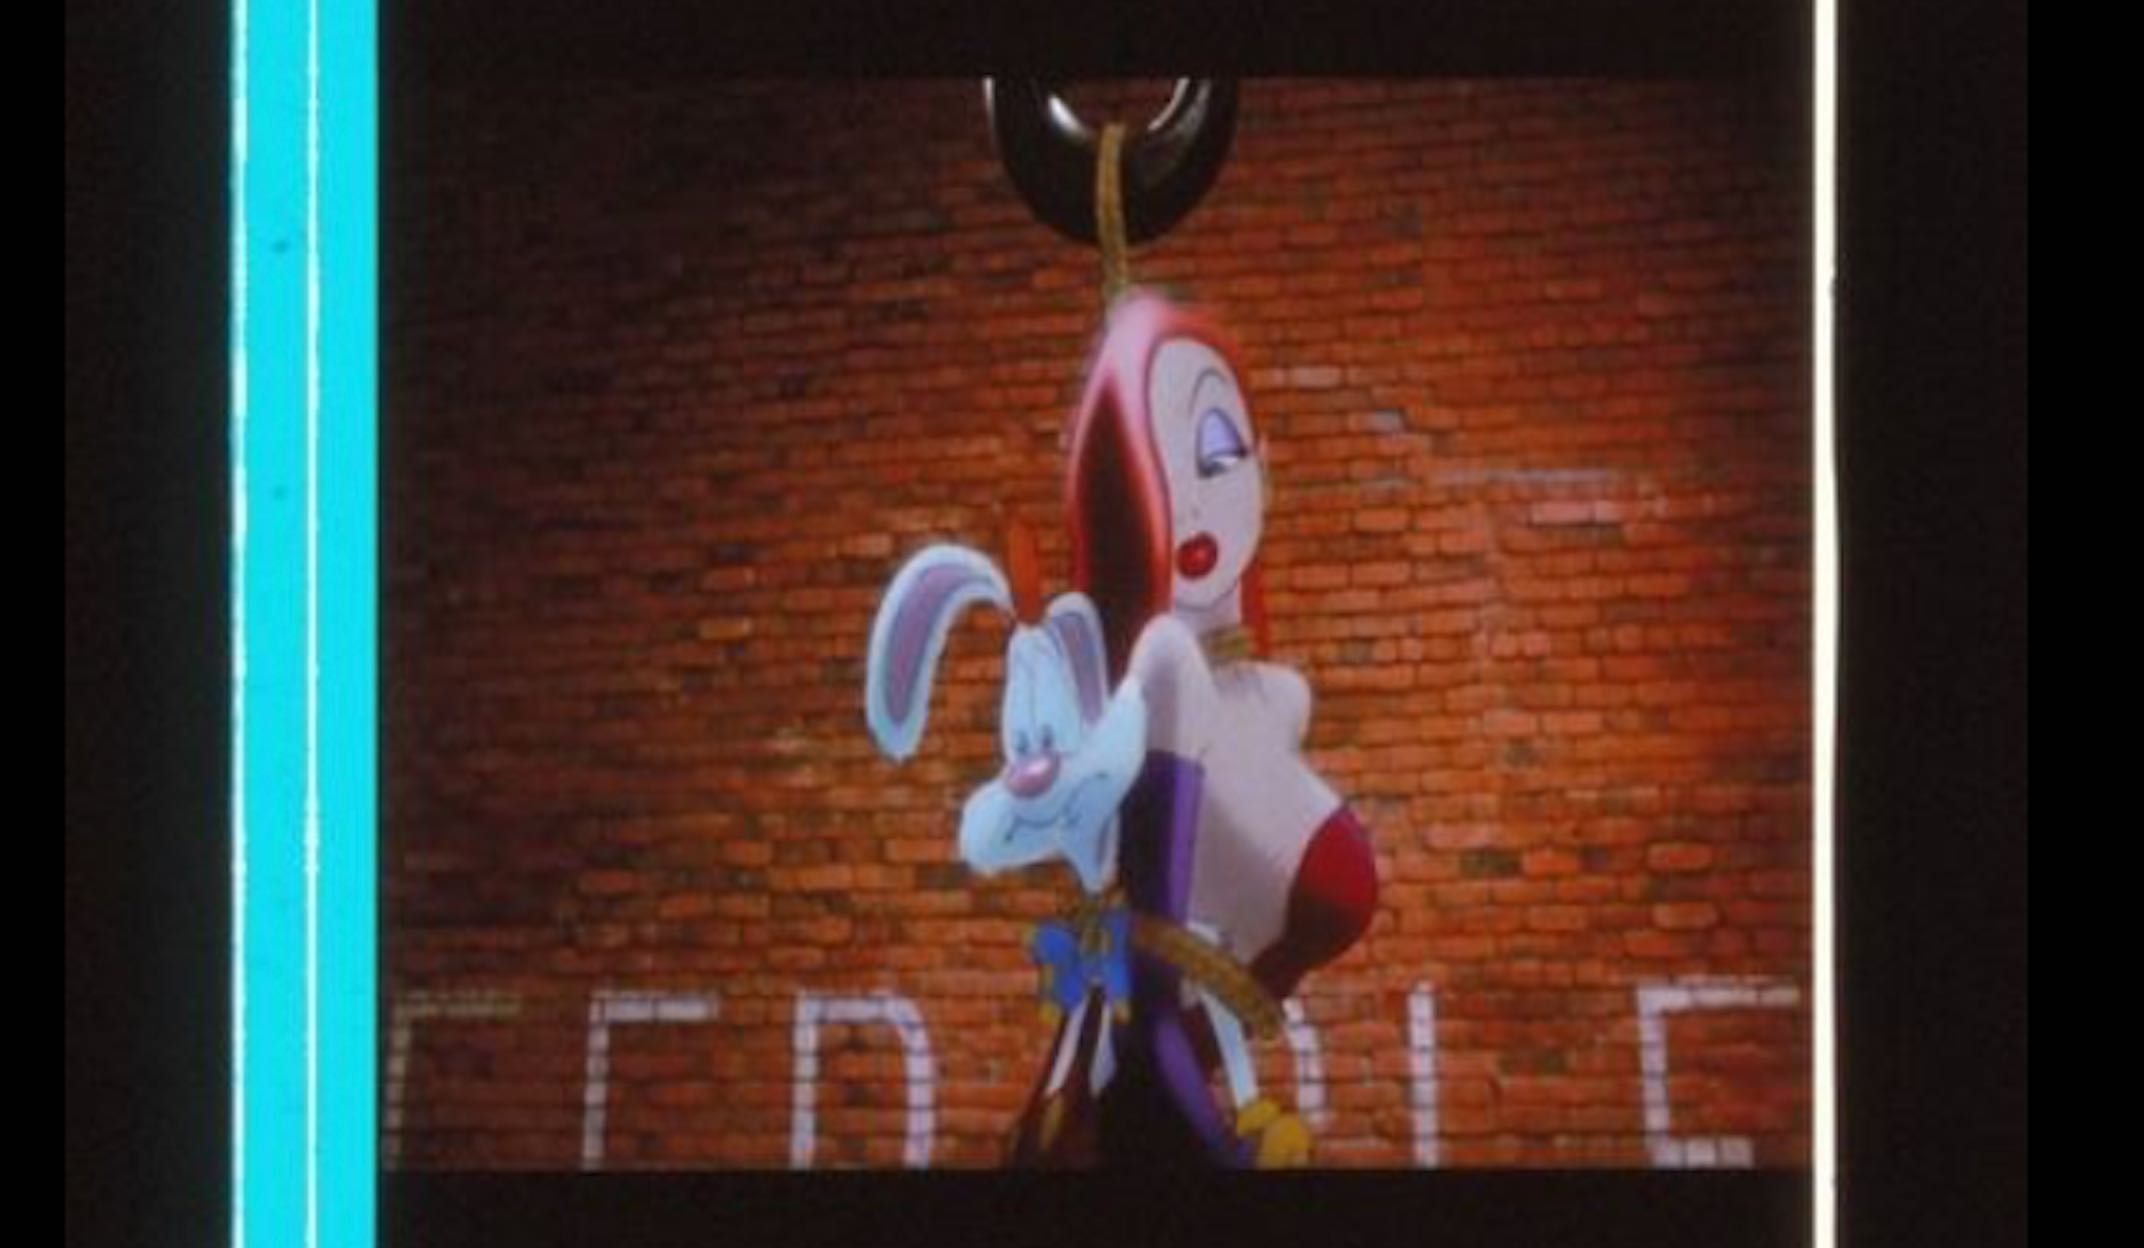 Fotogramas em película 35mm do filme culto Who Framed Roger Rabbit